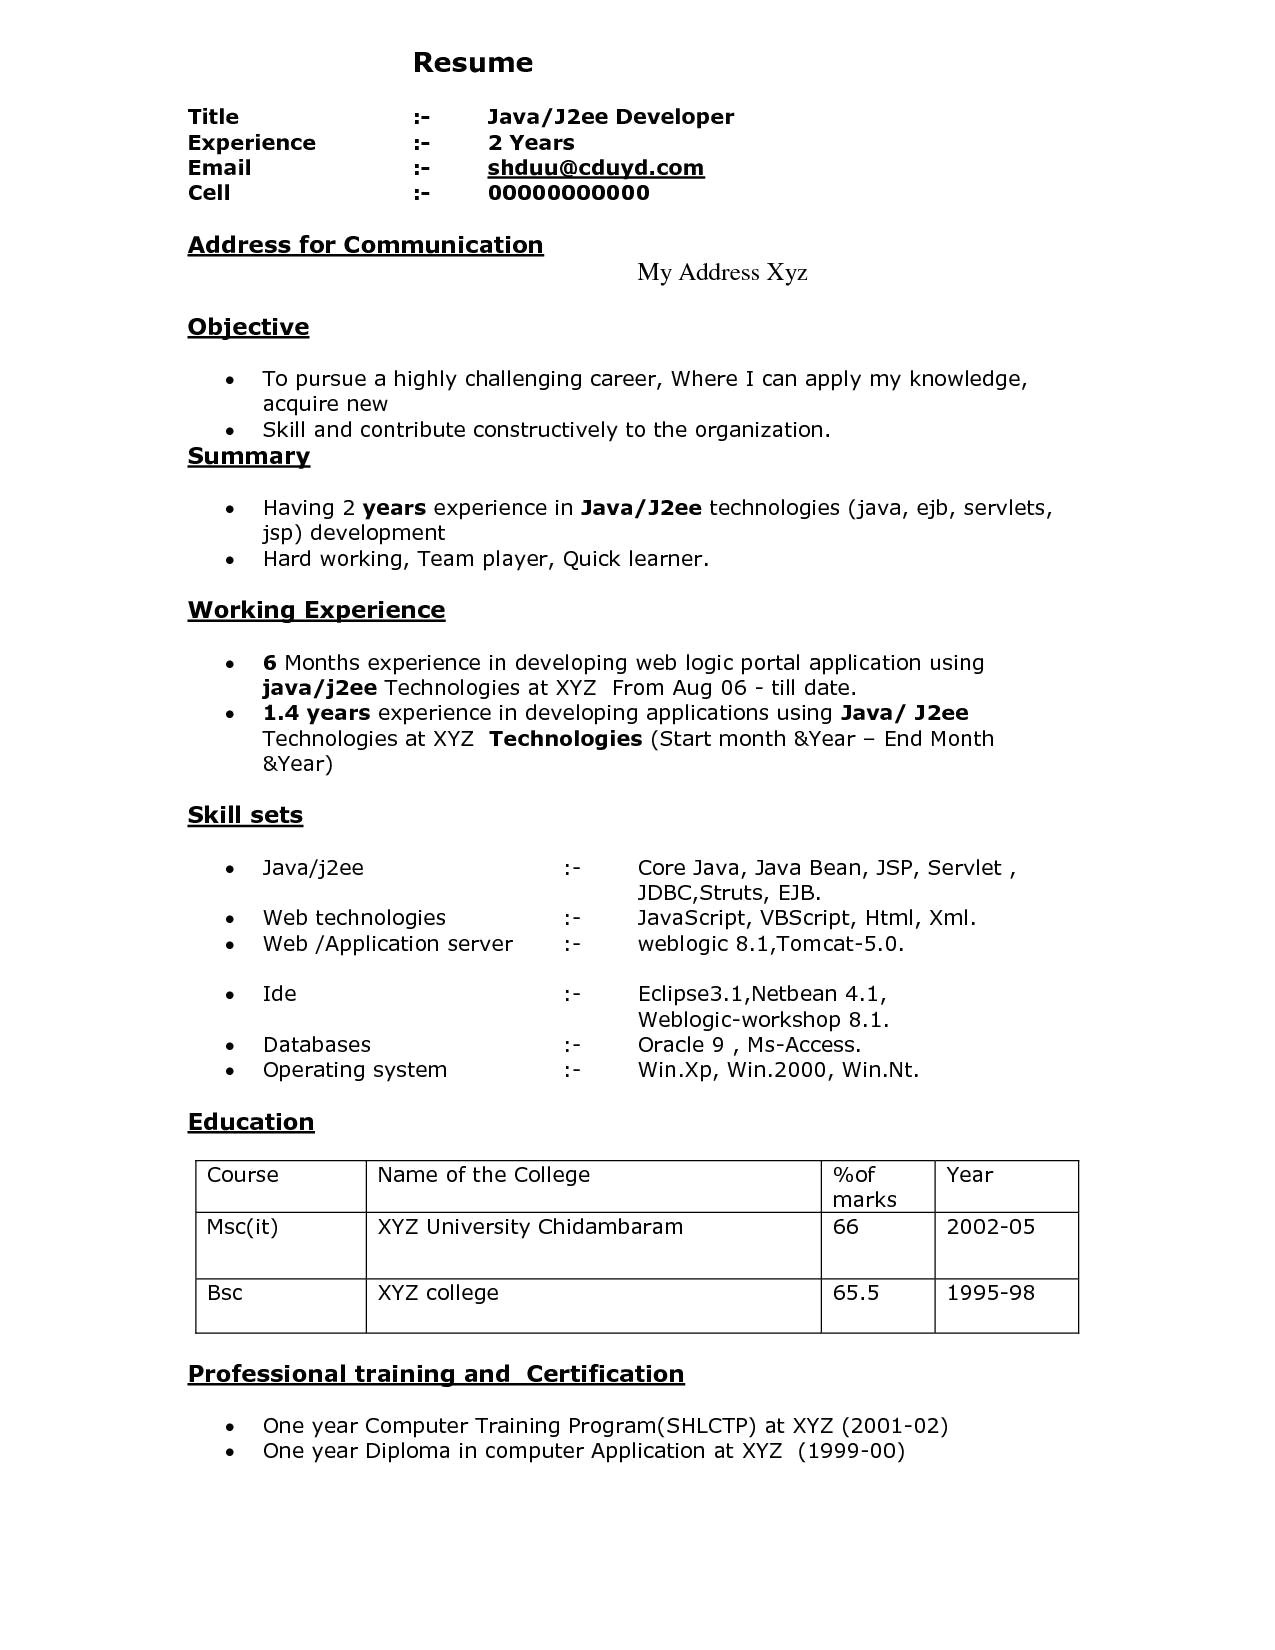 sap bi sample resume for 2 years experience beautiful sample java developer resume